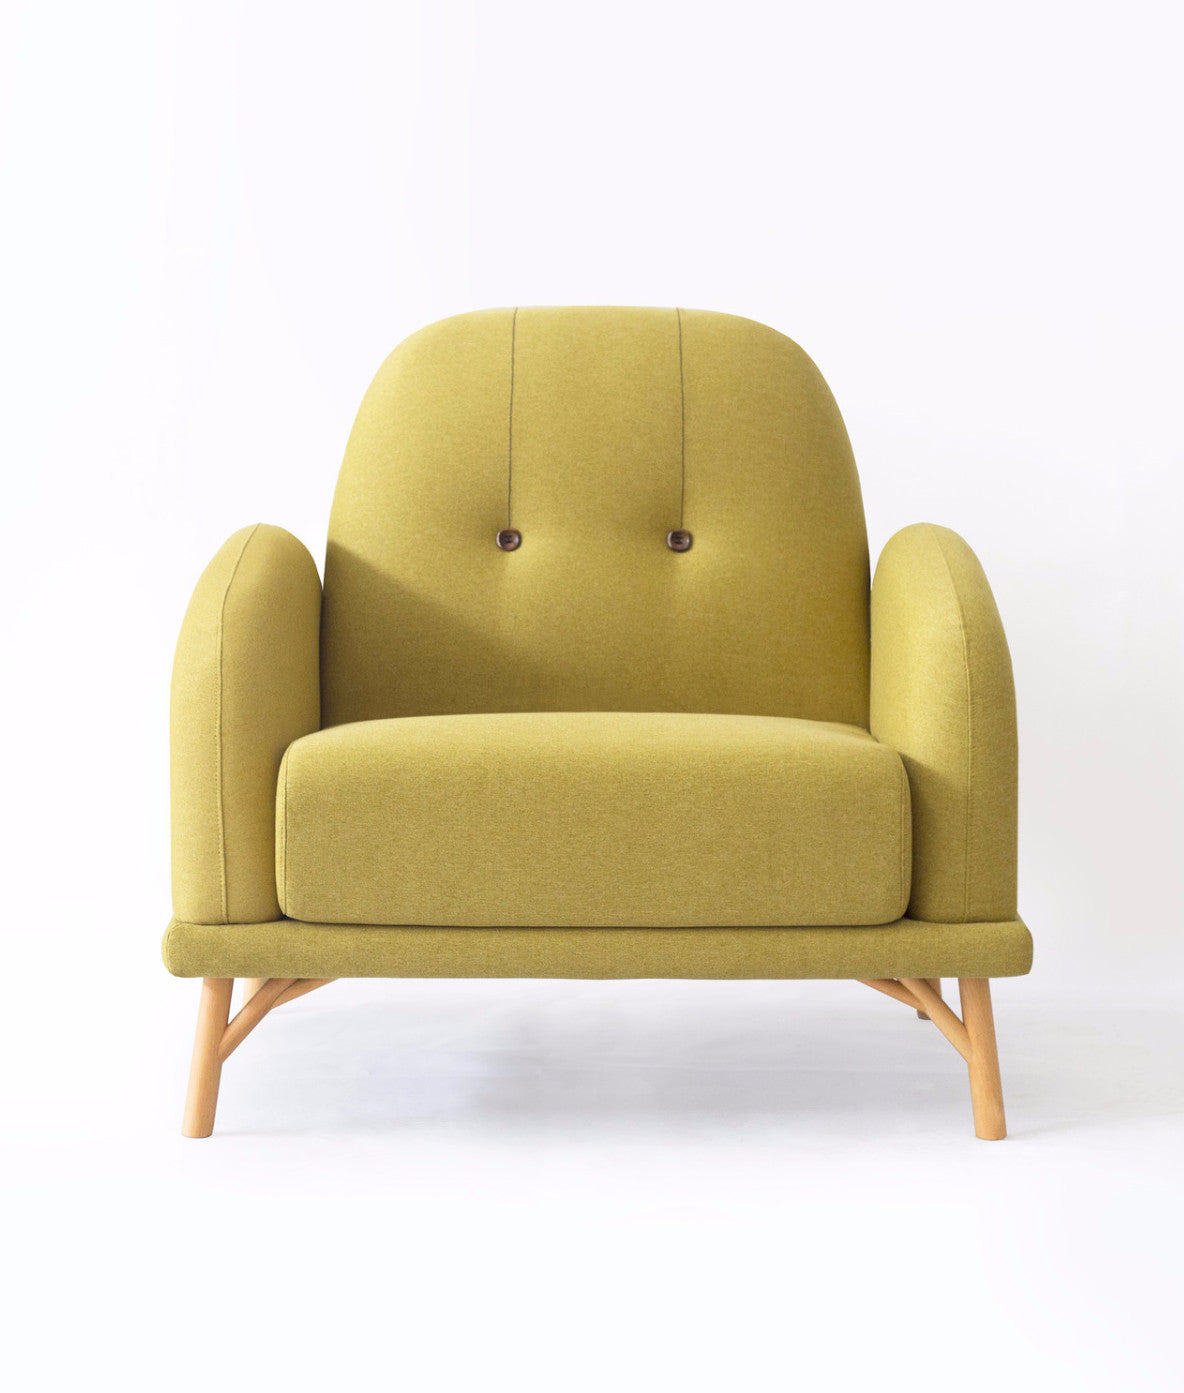 NIFTY SOFA (SINGLE) Sofa ziinlife Lime Yellow - Wood Buttons